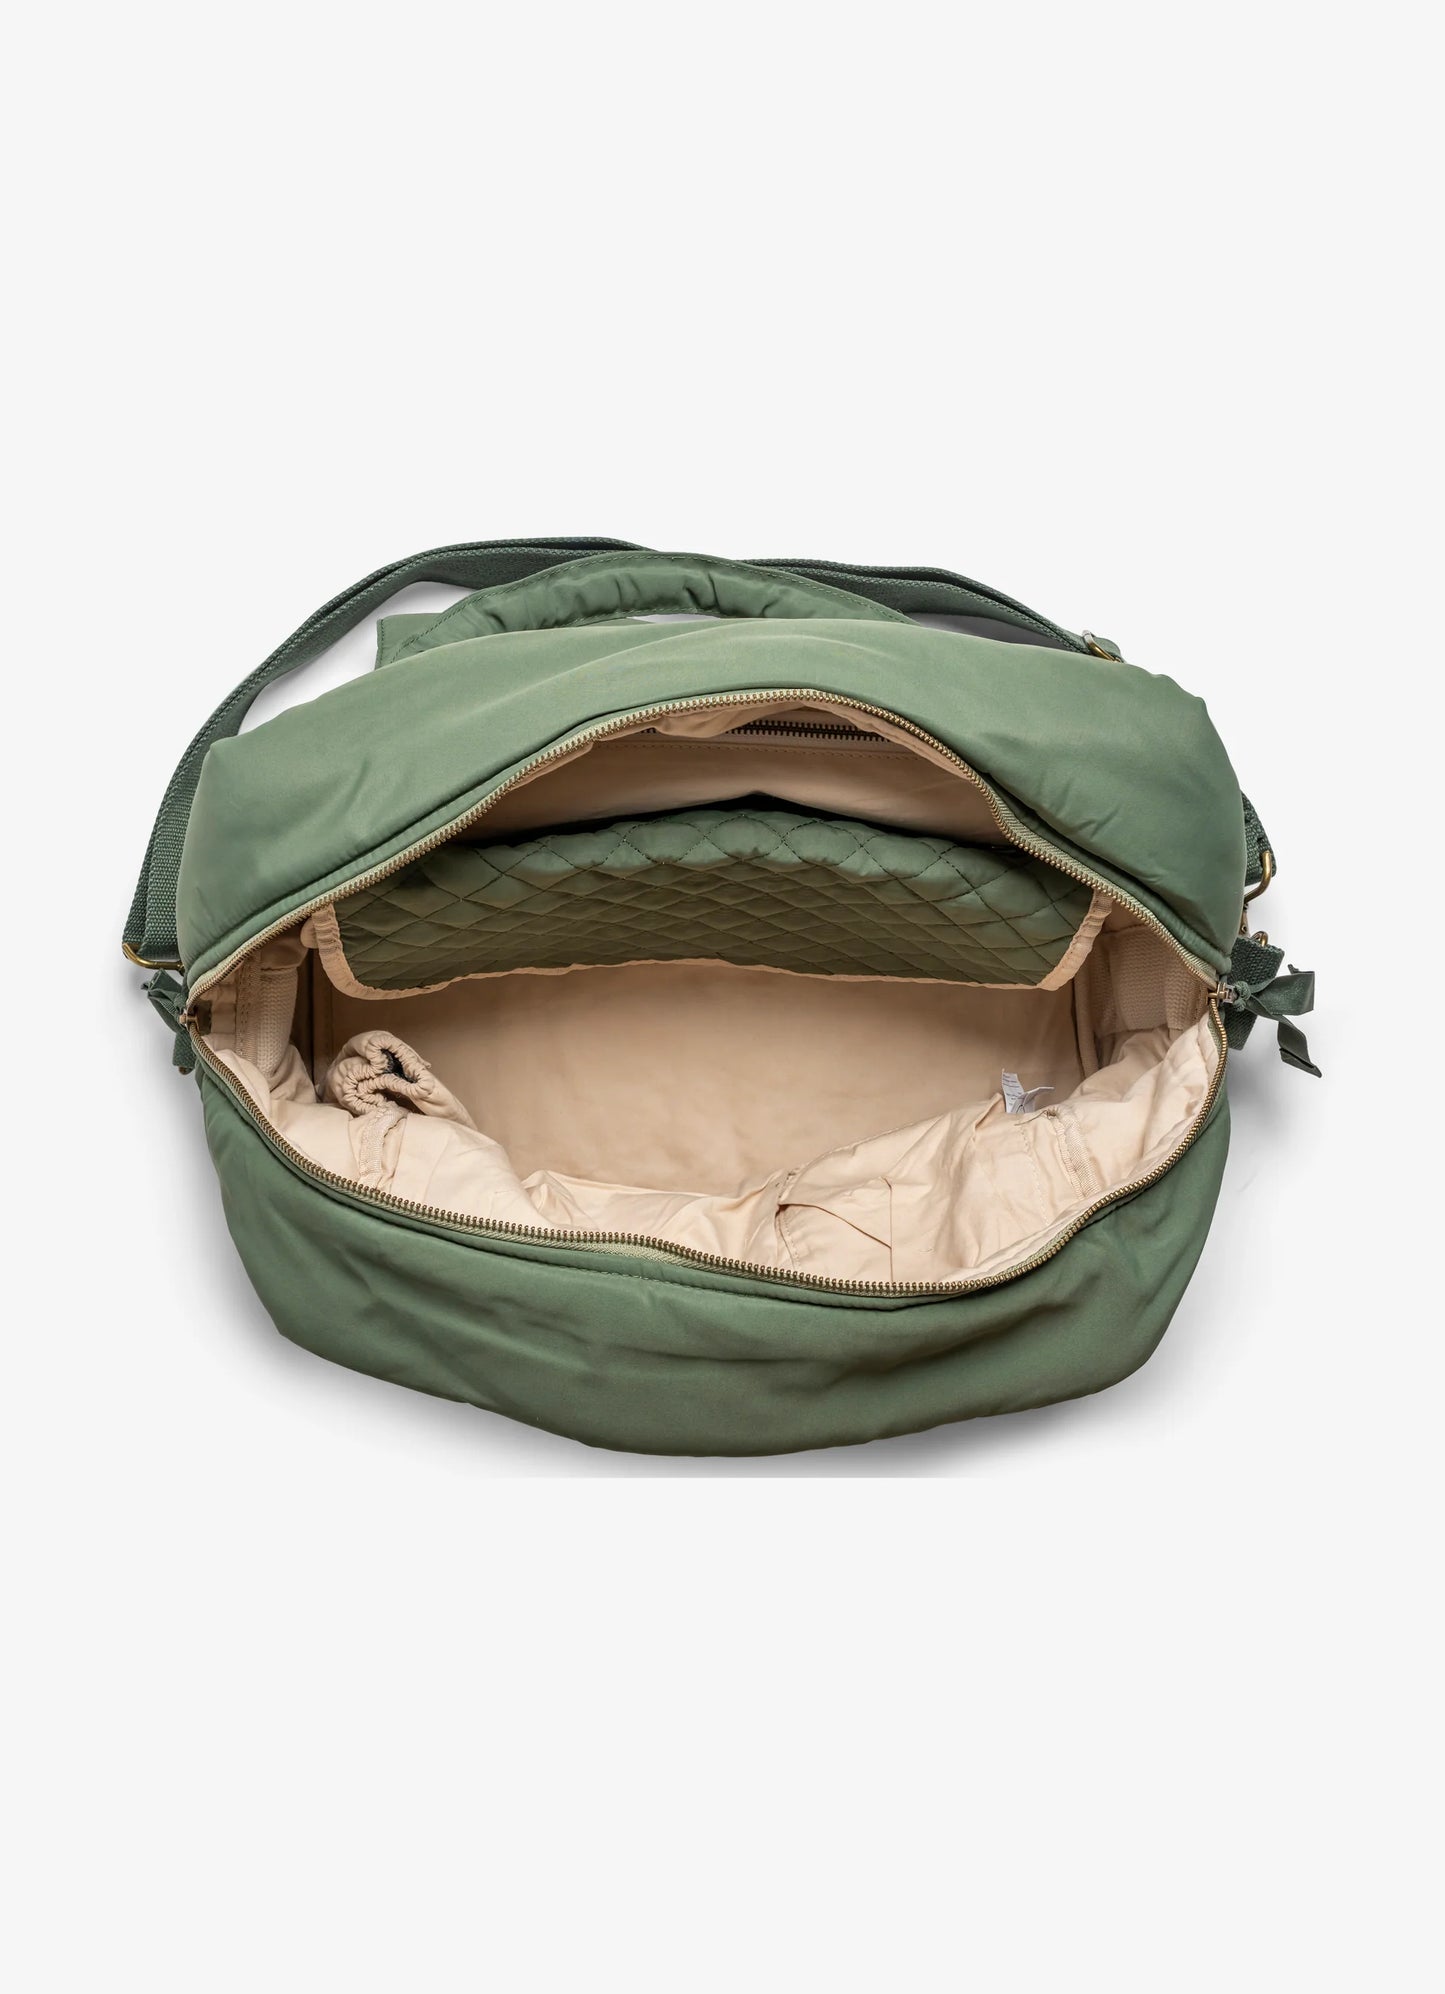 Multi Purpose Bag Green